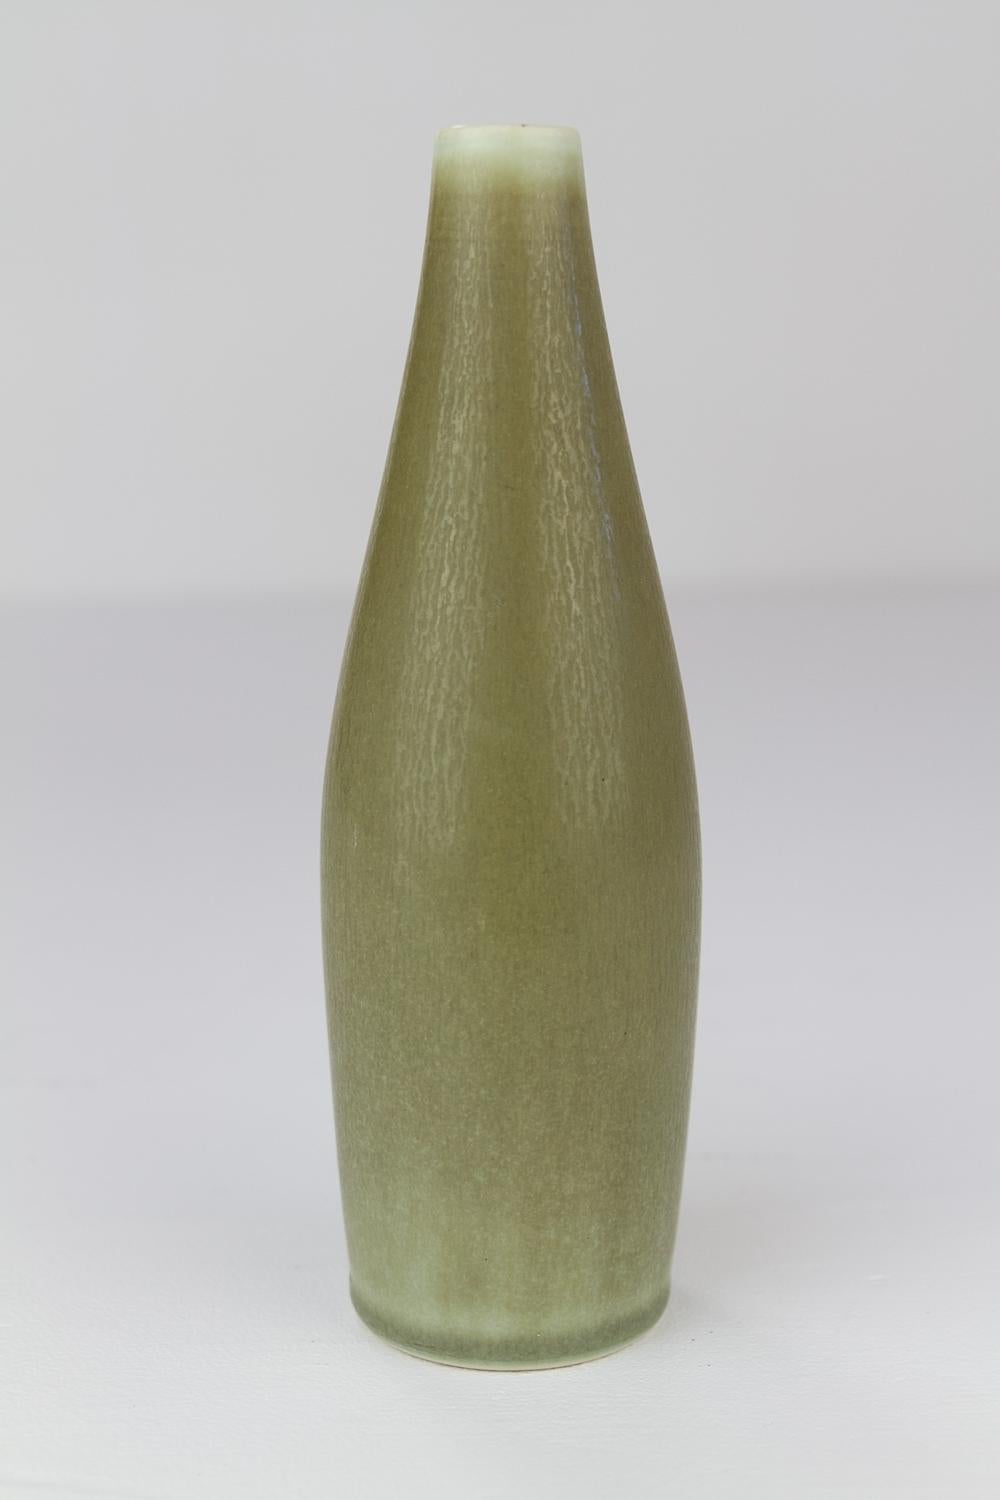 Danish Modern Ceramic Vase by Per Linnemann-Schmidt for Palshus, 1960s. For Sale 6